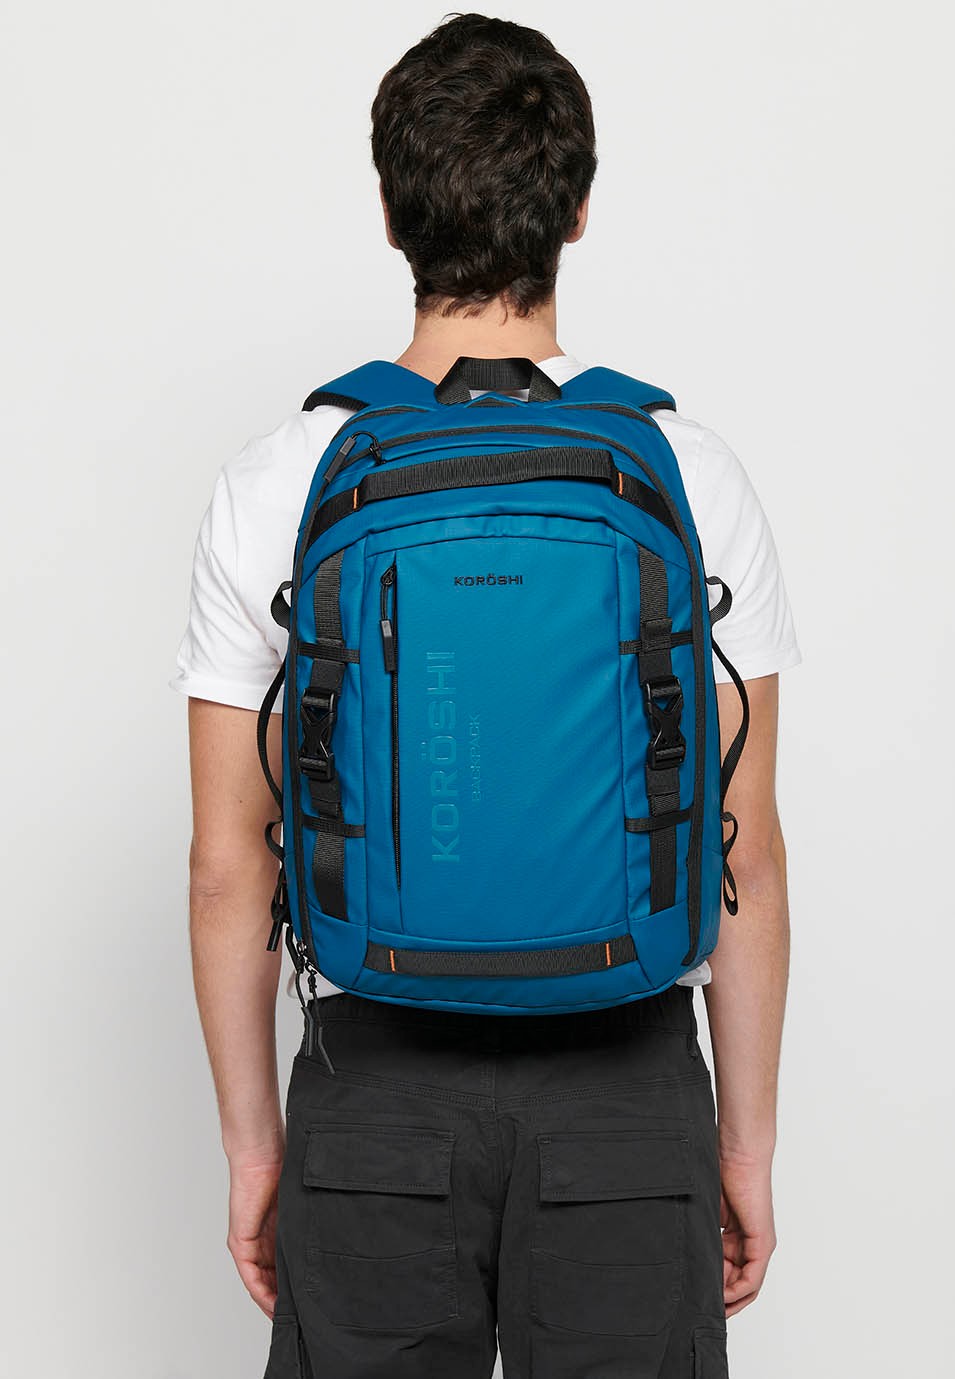 Koröshi-Rucksack mit zwei Reißverschlussfächern, eines für einen Laptop, und verstellbaren Trägern in Blau 6